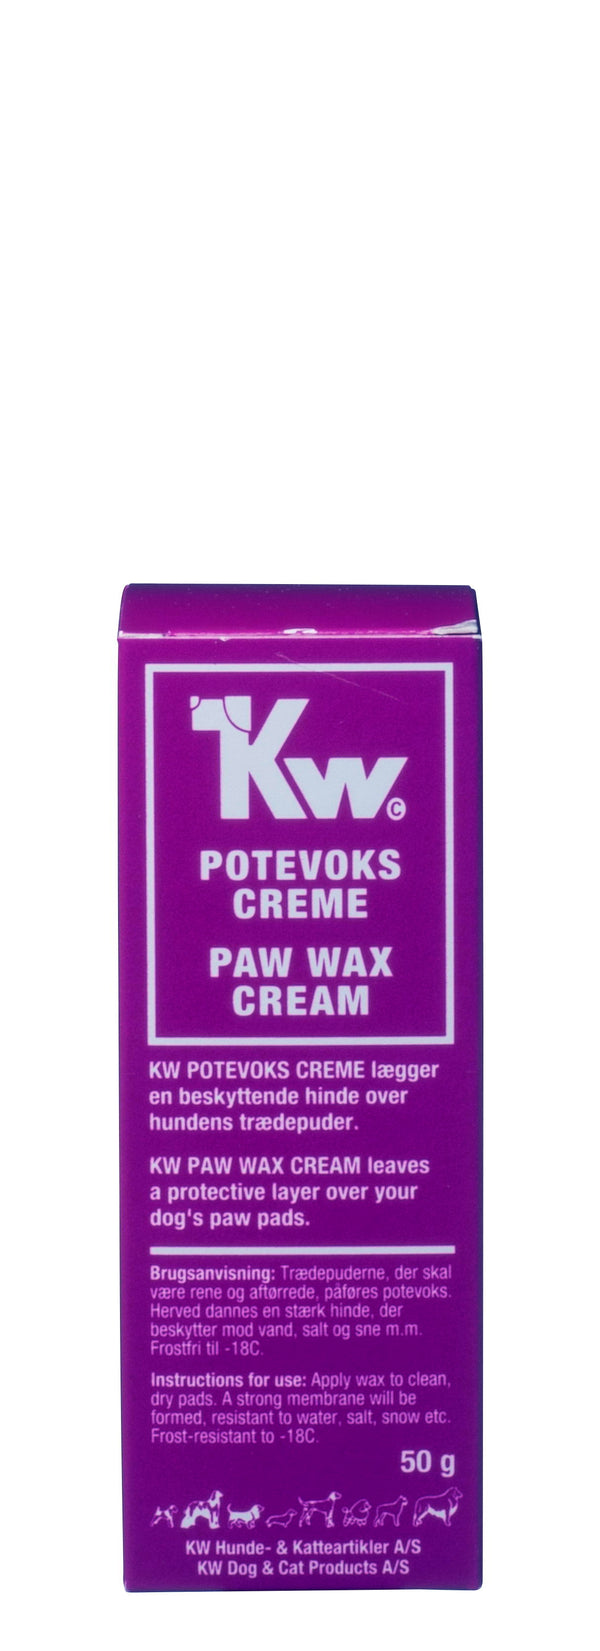 KW Potevoks creme tube 50g